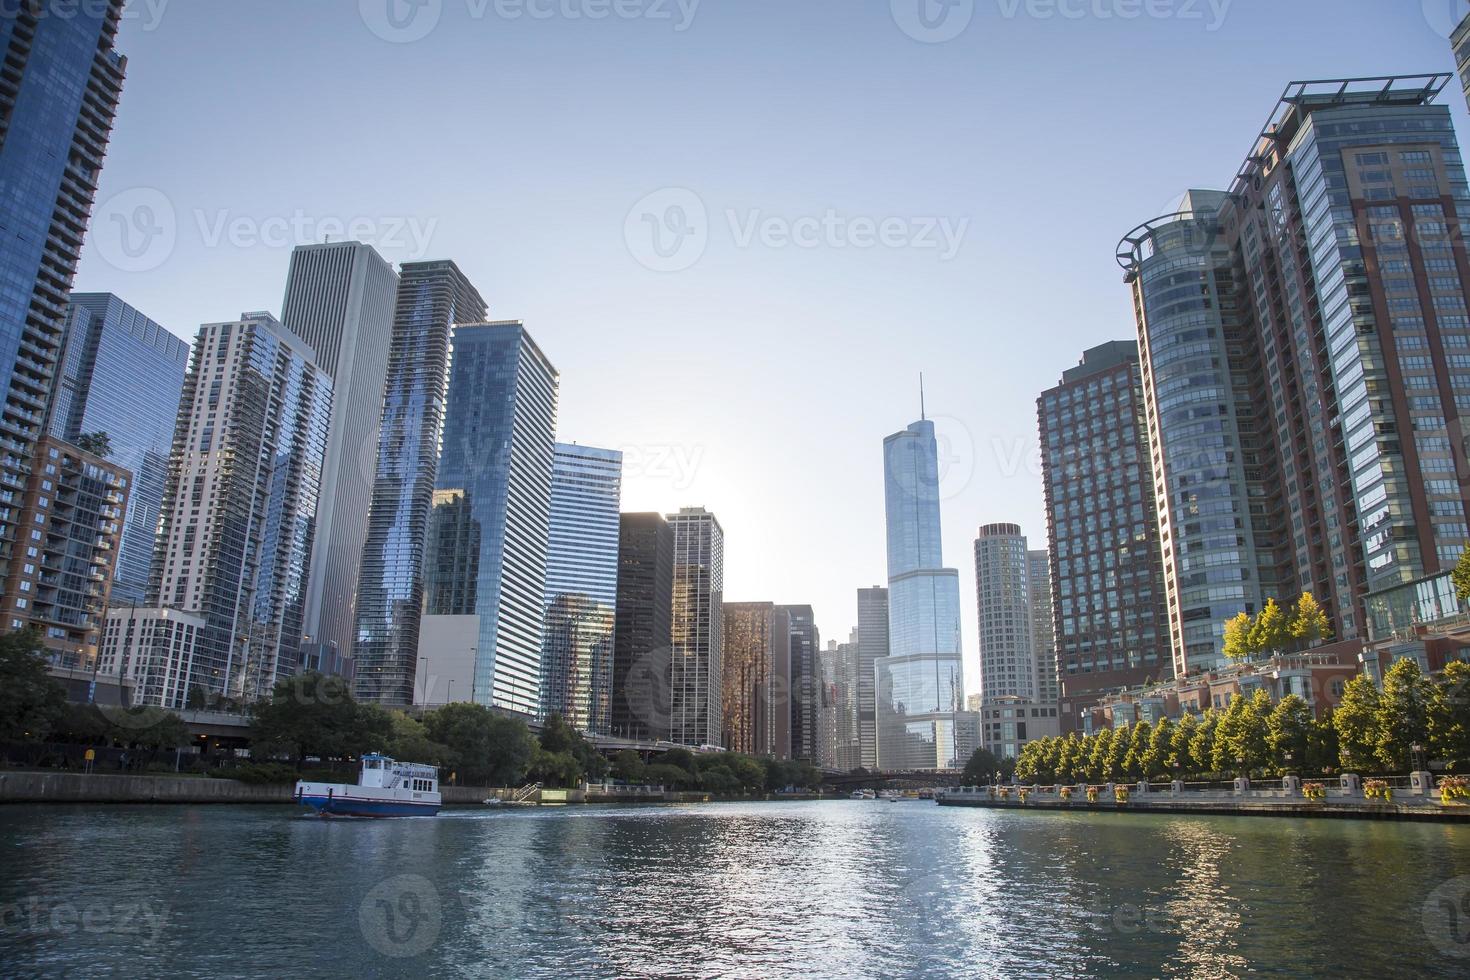 stati uniti d'america - illinois - chicago, chicago river skyline foto